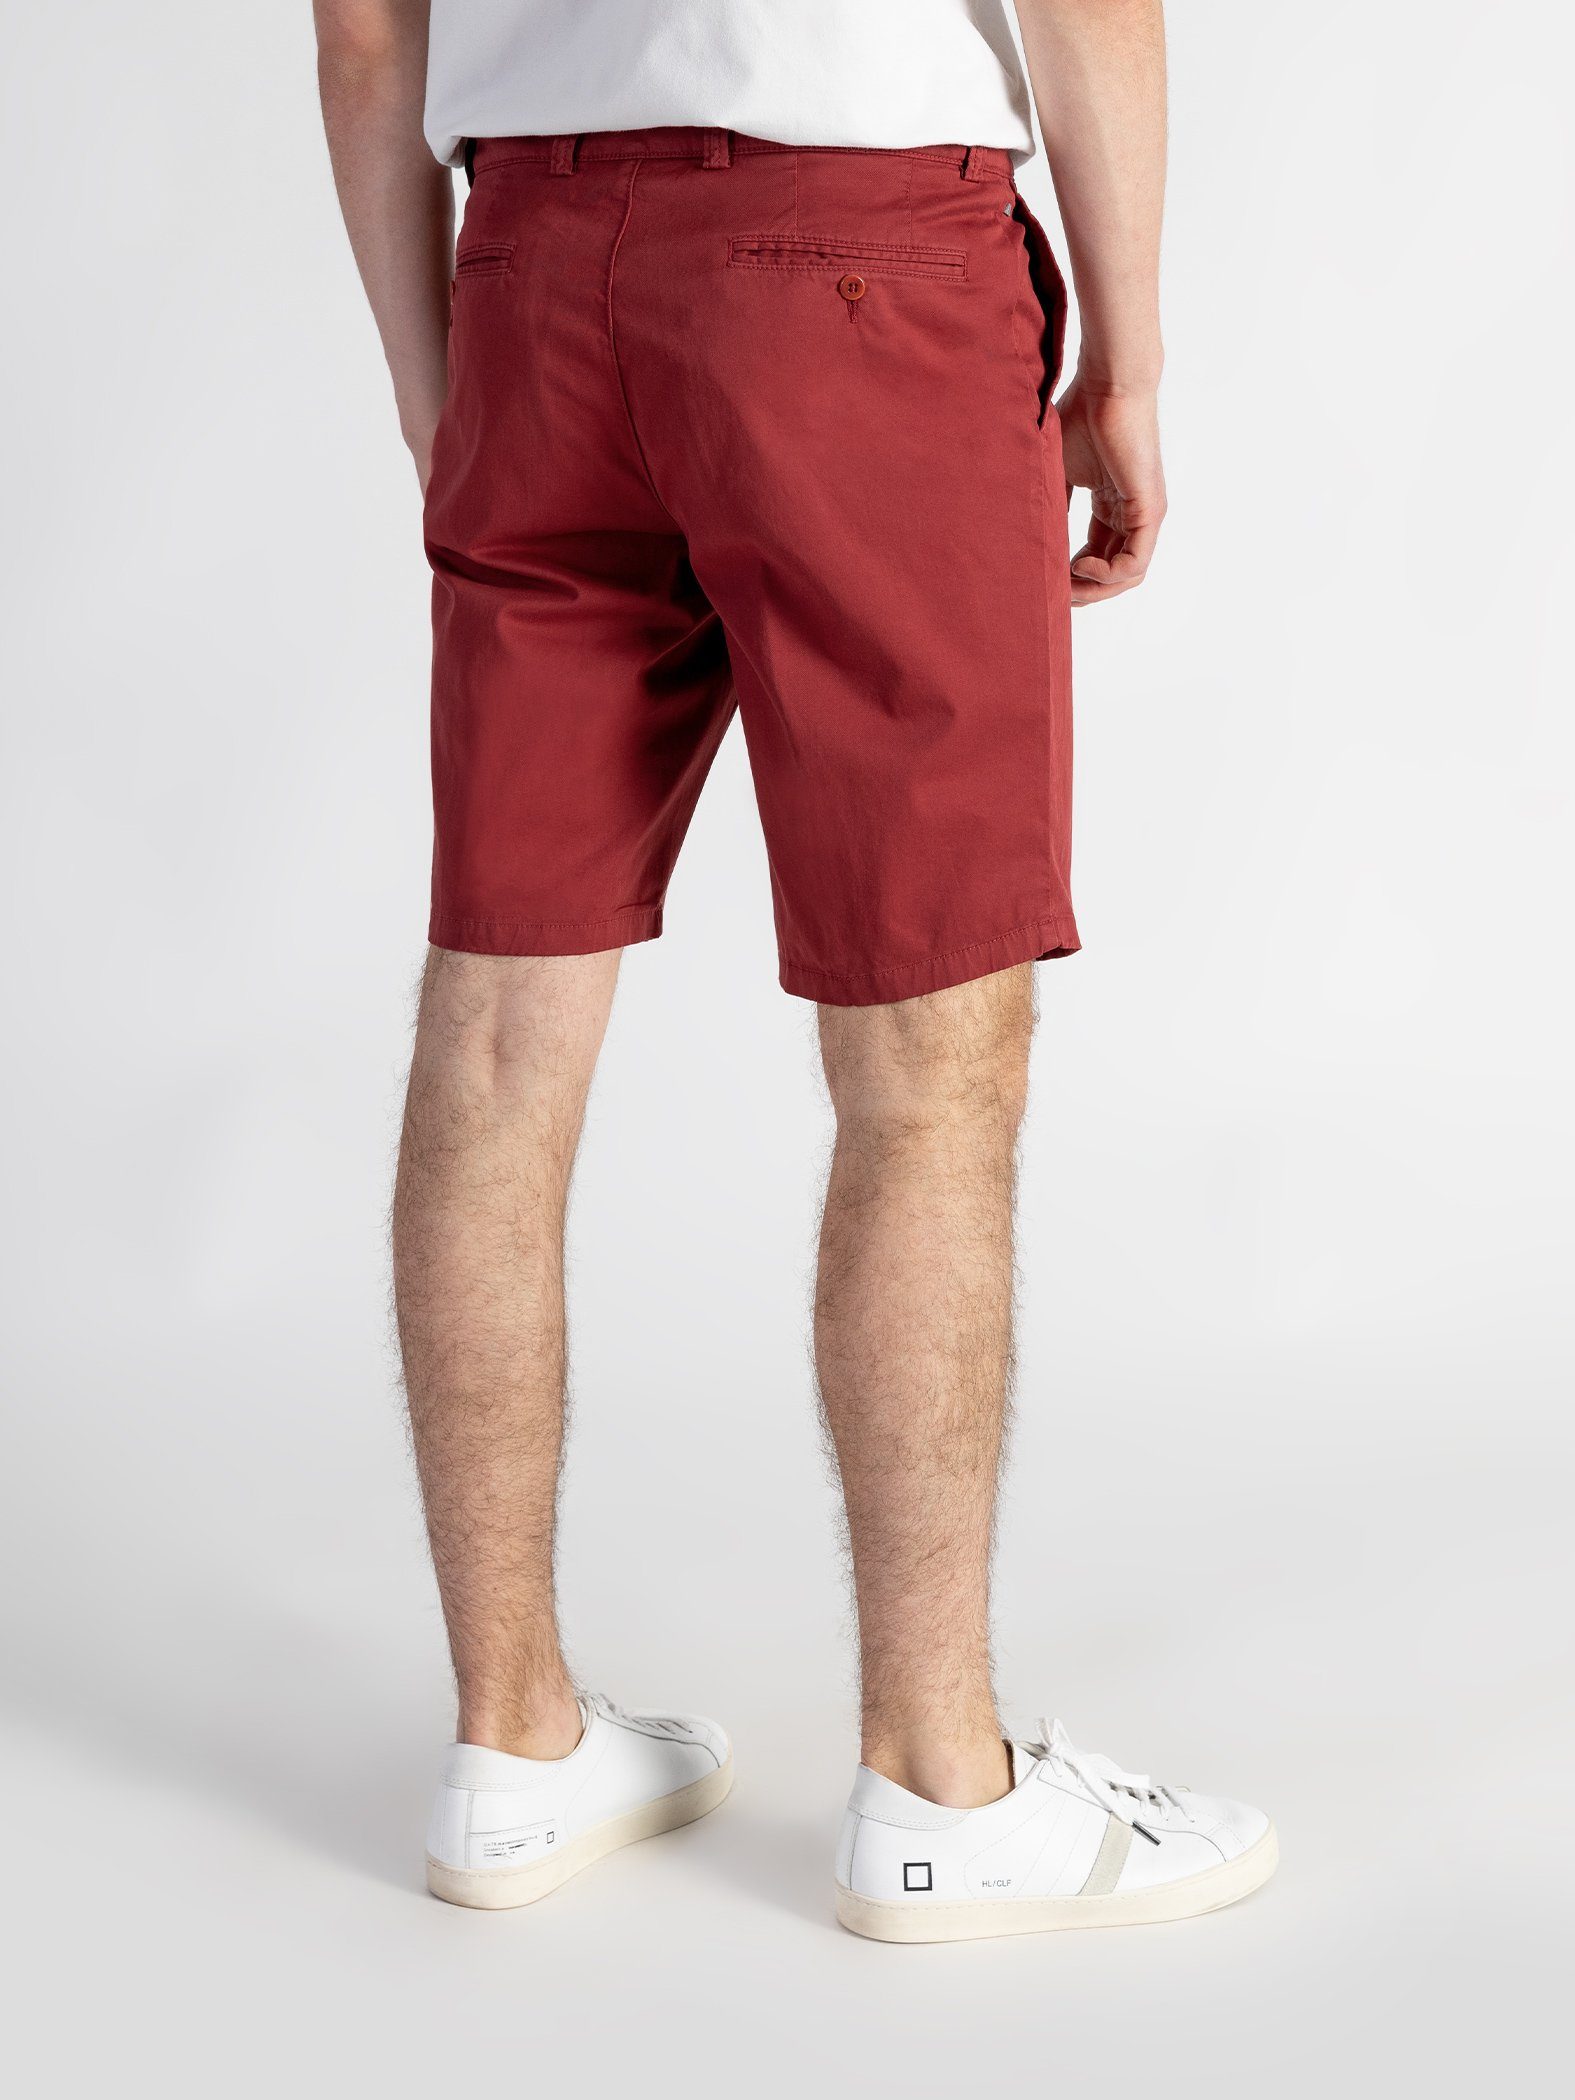 Bund, mit GOTS-zertifiziert Shorts Shorts Farbauswahl, TwoMates Rot elastischem